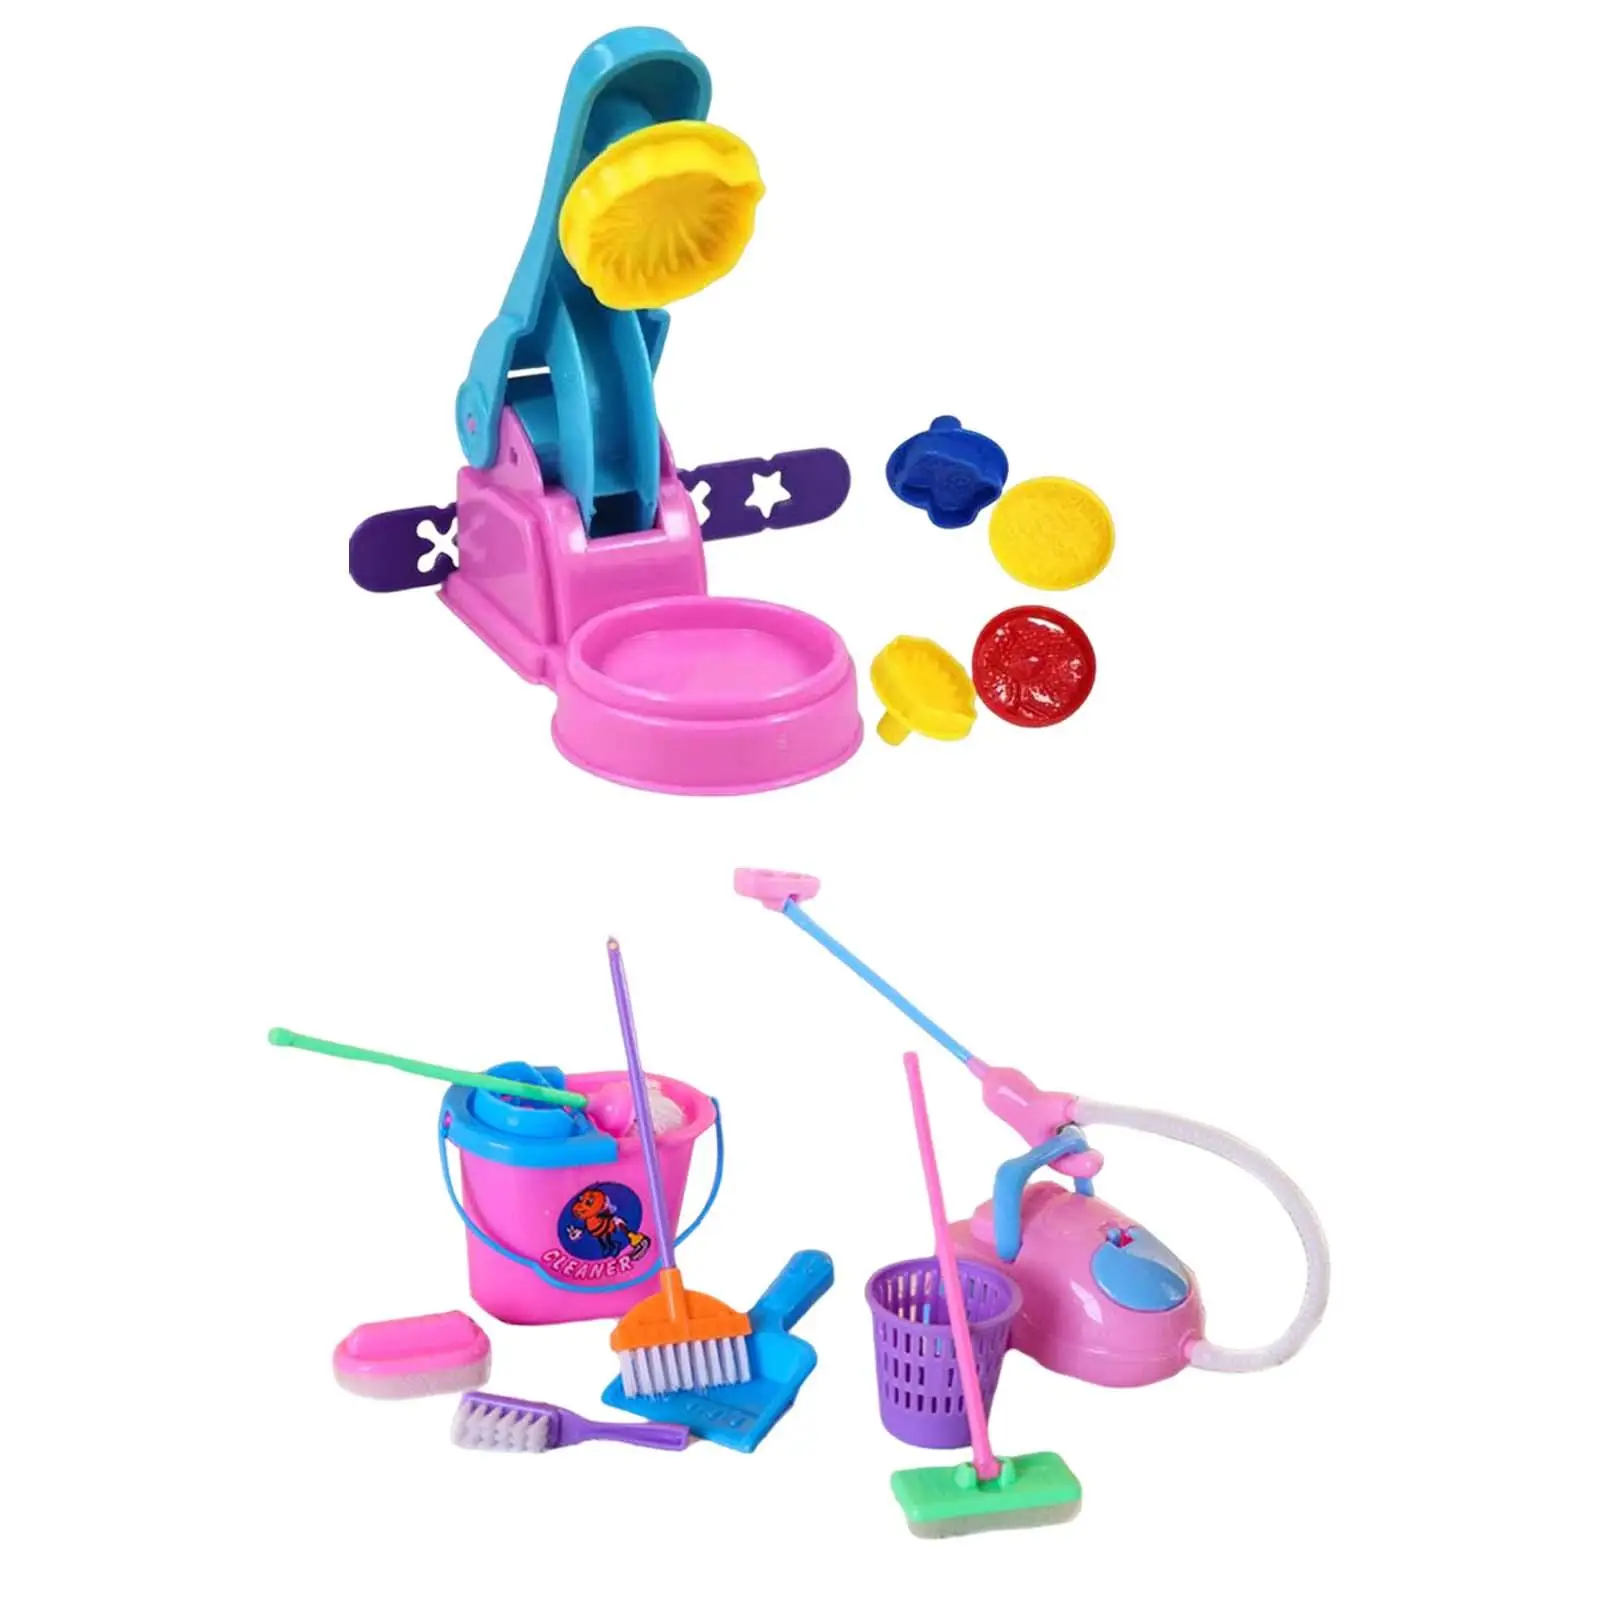 

Детская игрушка для дома для развития мелкой моторики, игрушка для ролевых игр, игрушка для раннего развития для детей 4, 5, 6, для мальчиков и девочек, детские праздничные подарки